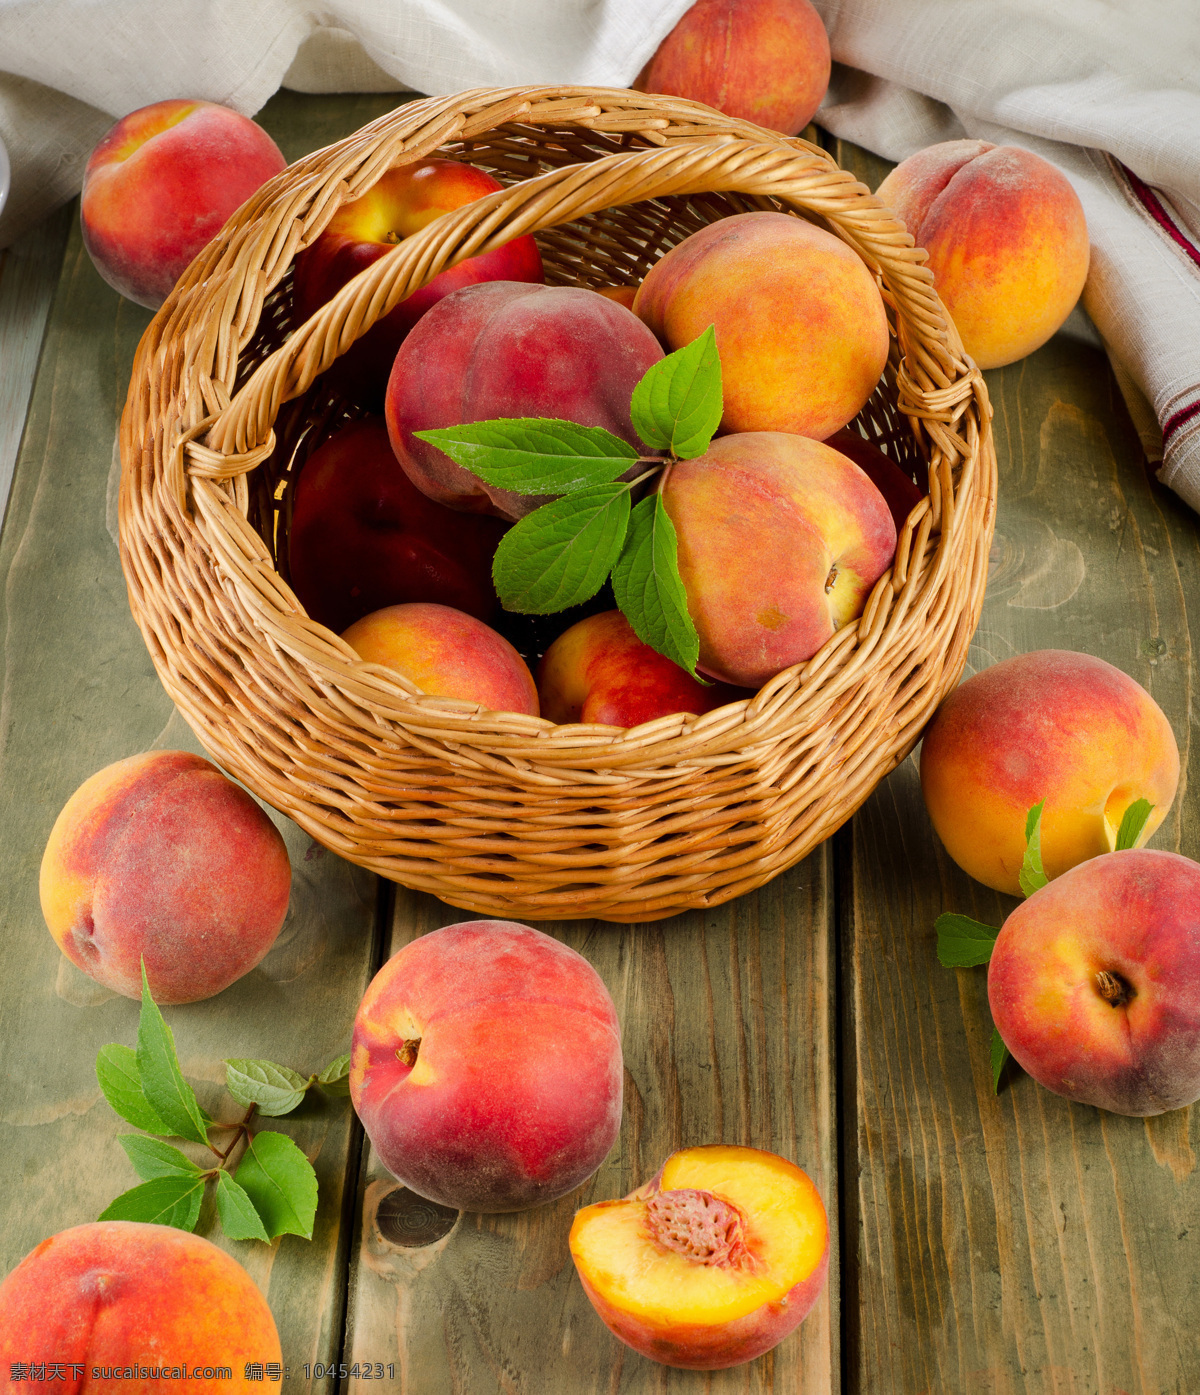 竹篮 里 桃子 水蜜桃 果实 果子 水果 新鲜水果 水果背景 水果图片 餐饮美食